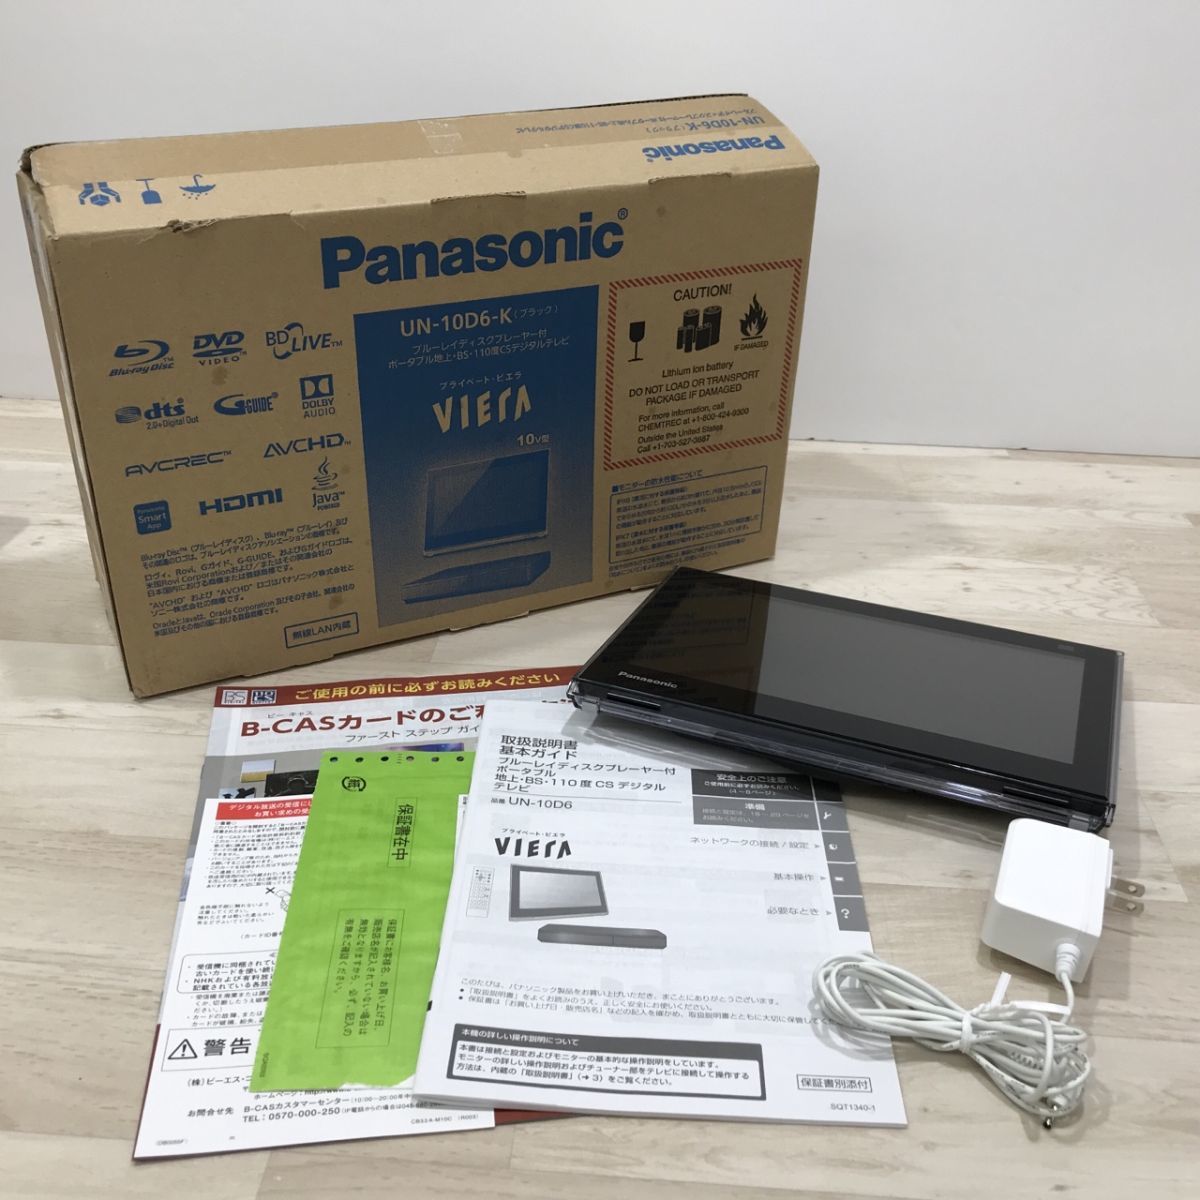 ヤフオク! - Panasonic パナソニック UN-10TD6D 2016年製ポー